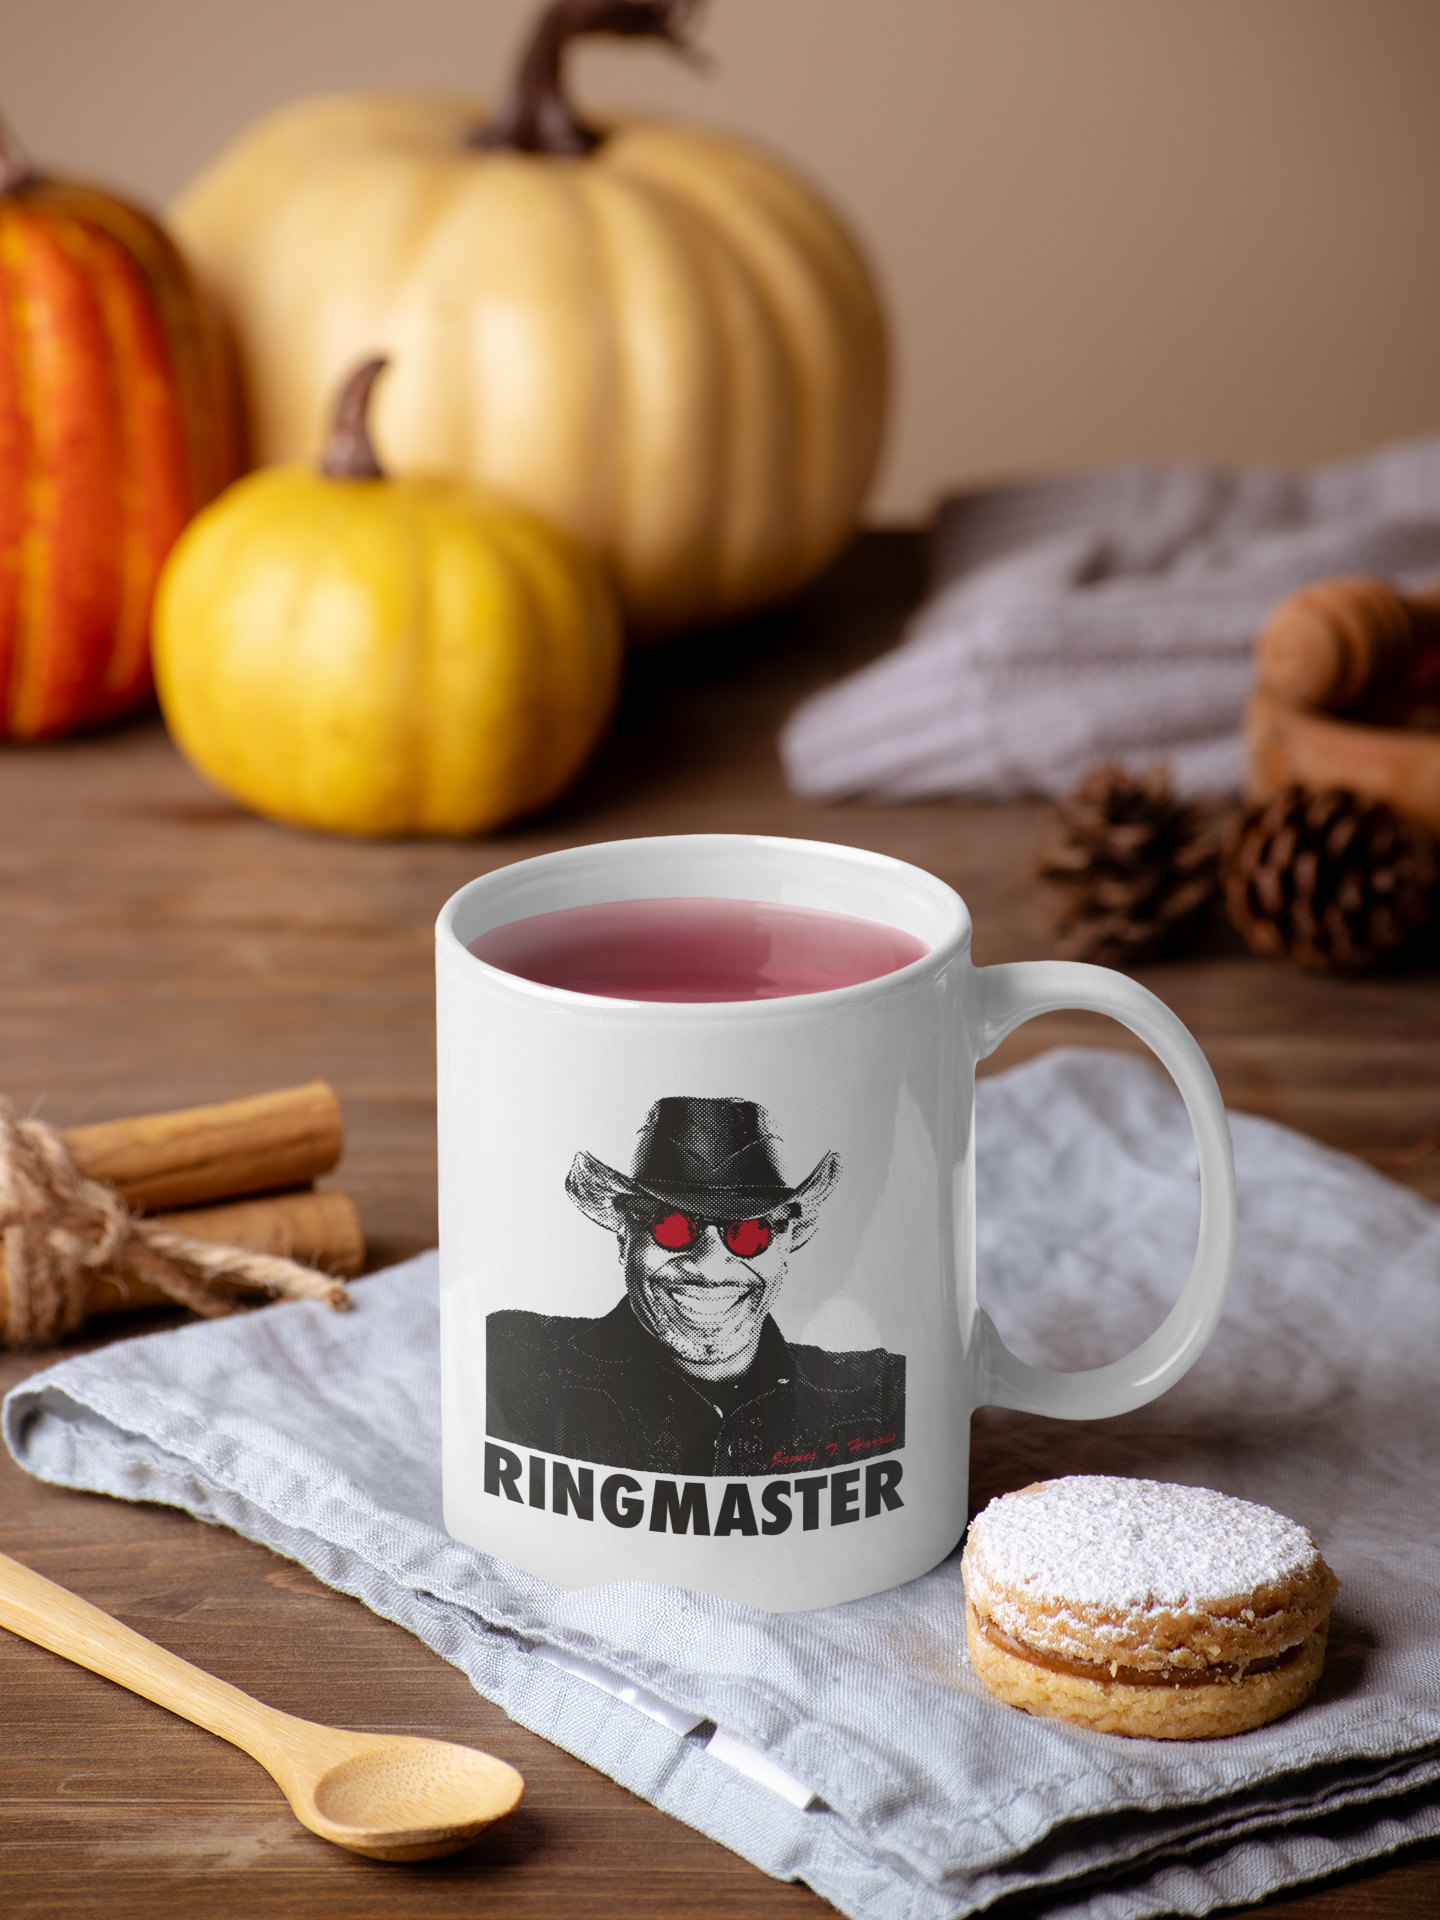 Ringmaster Mug Two Sides